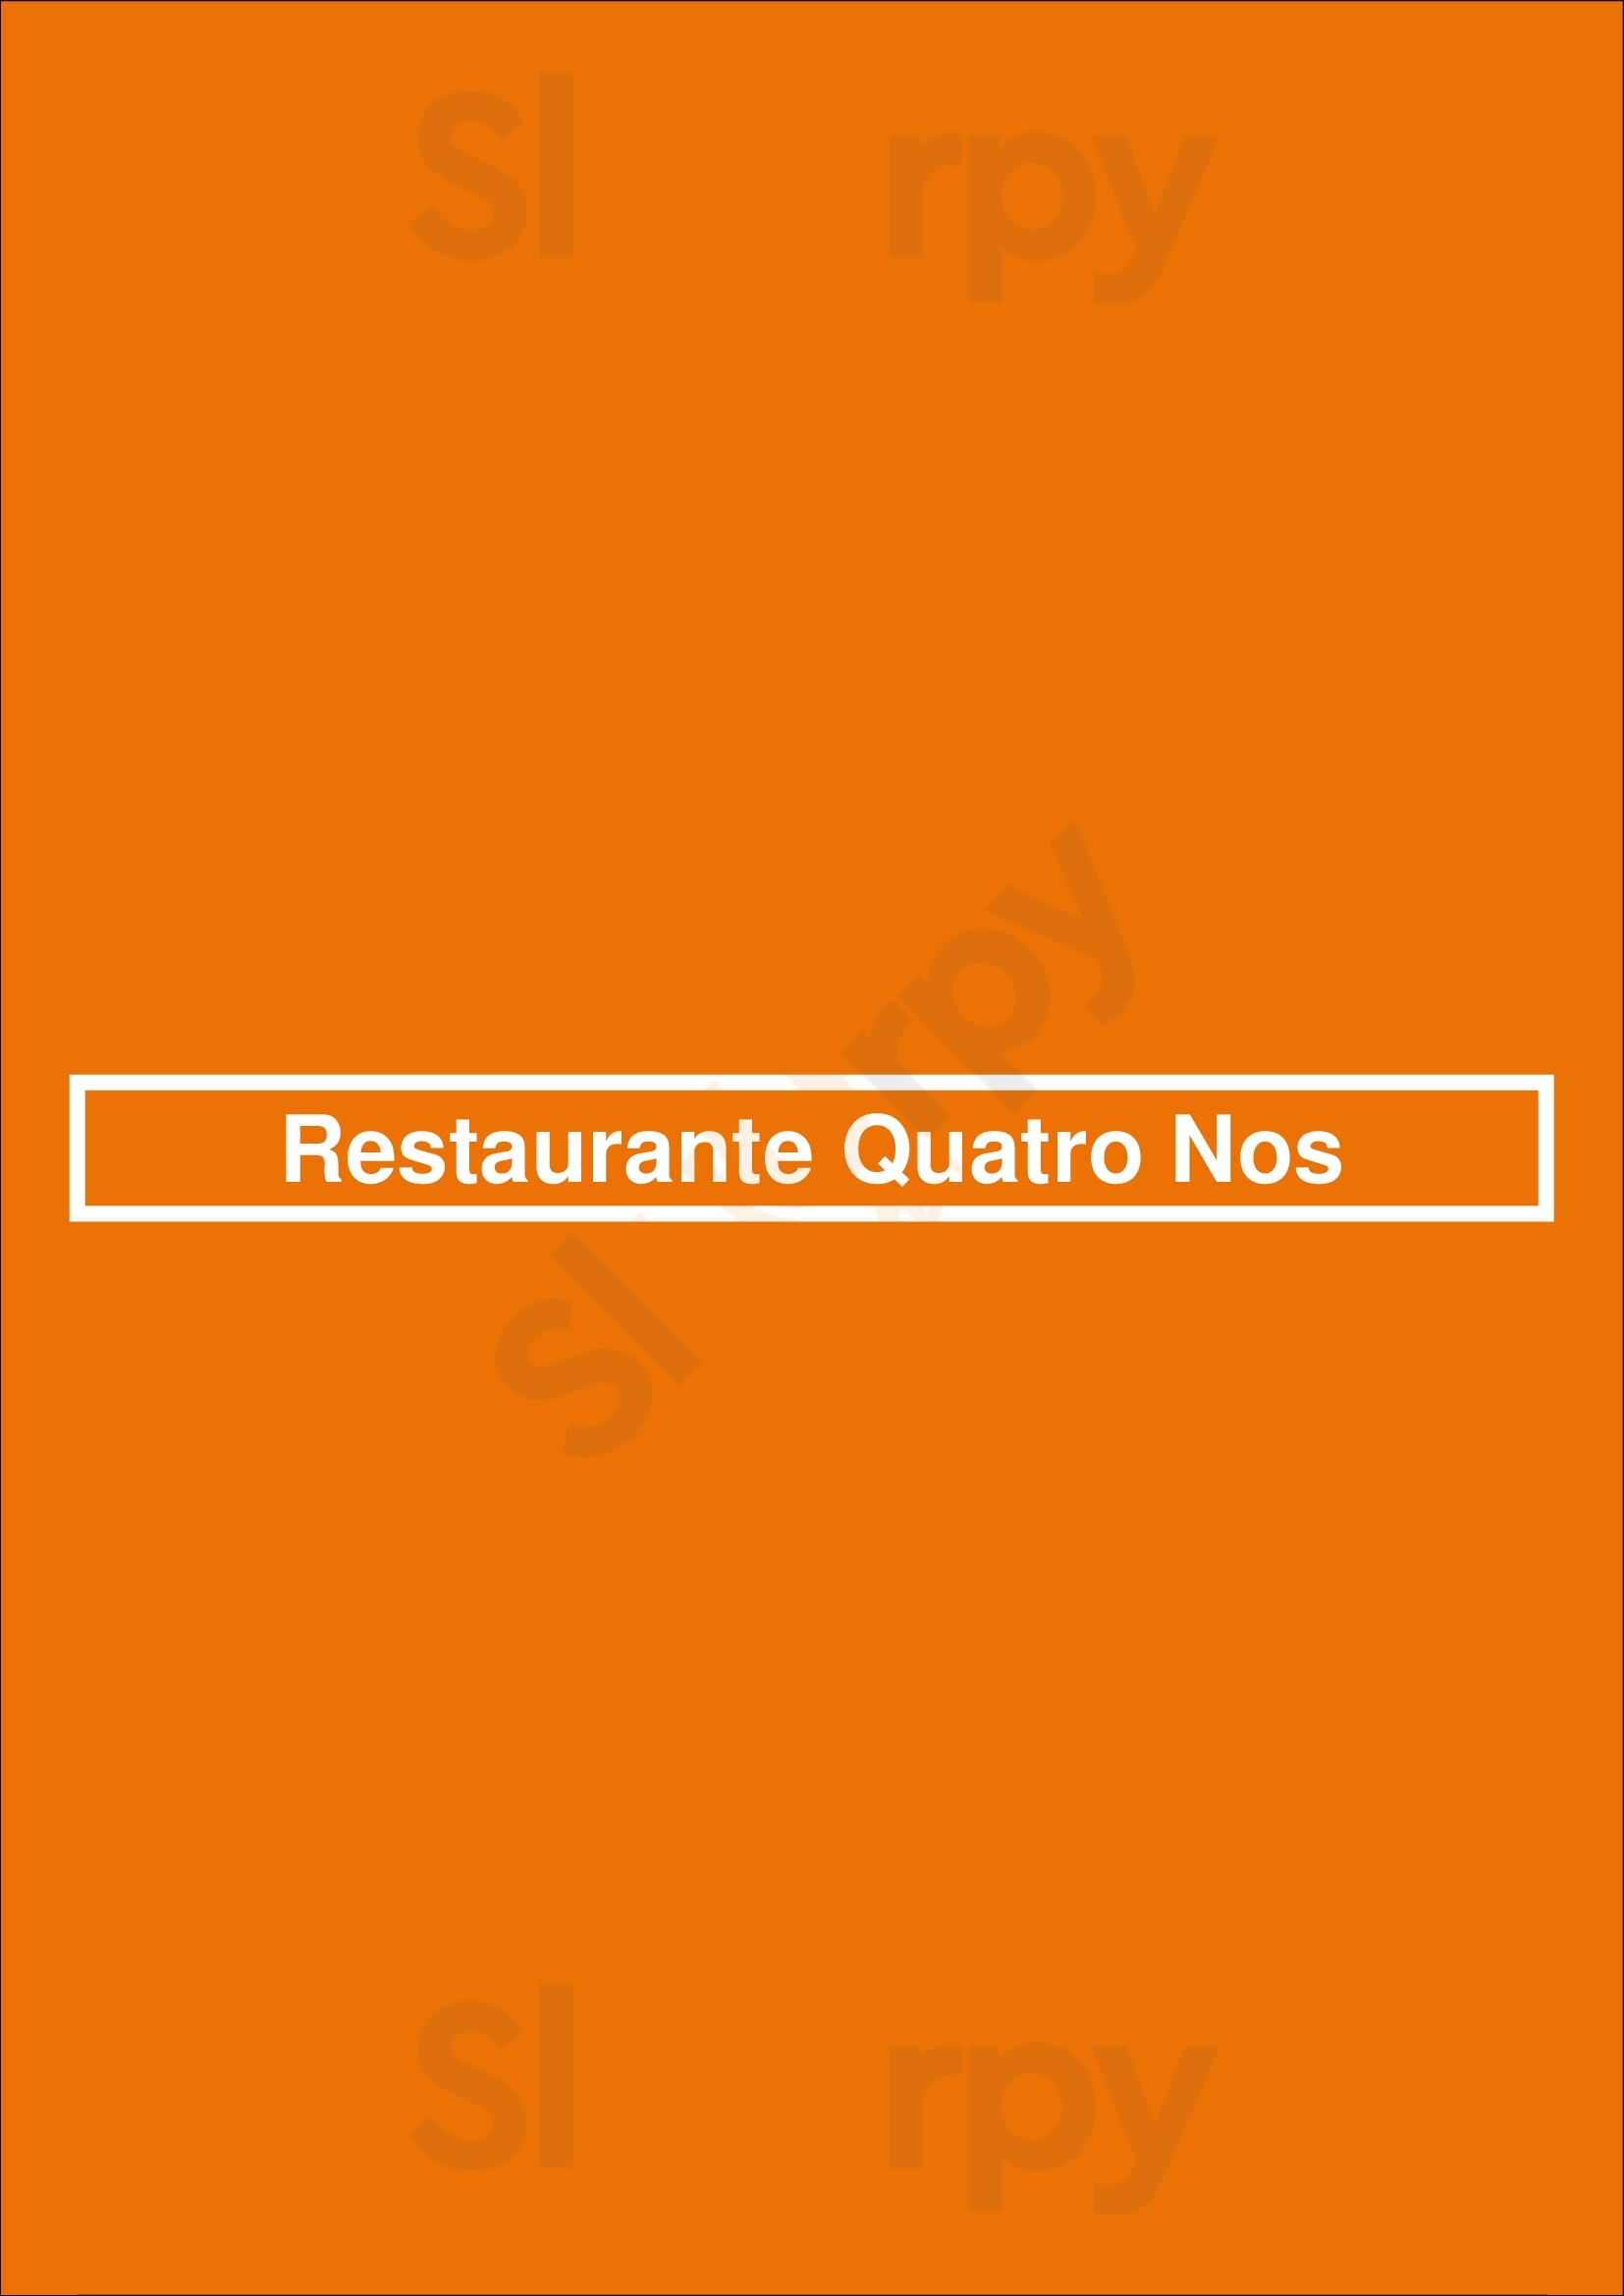 Restaurante Quatro Nos Aveiro Menu - 1